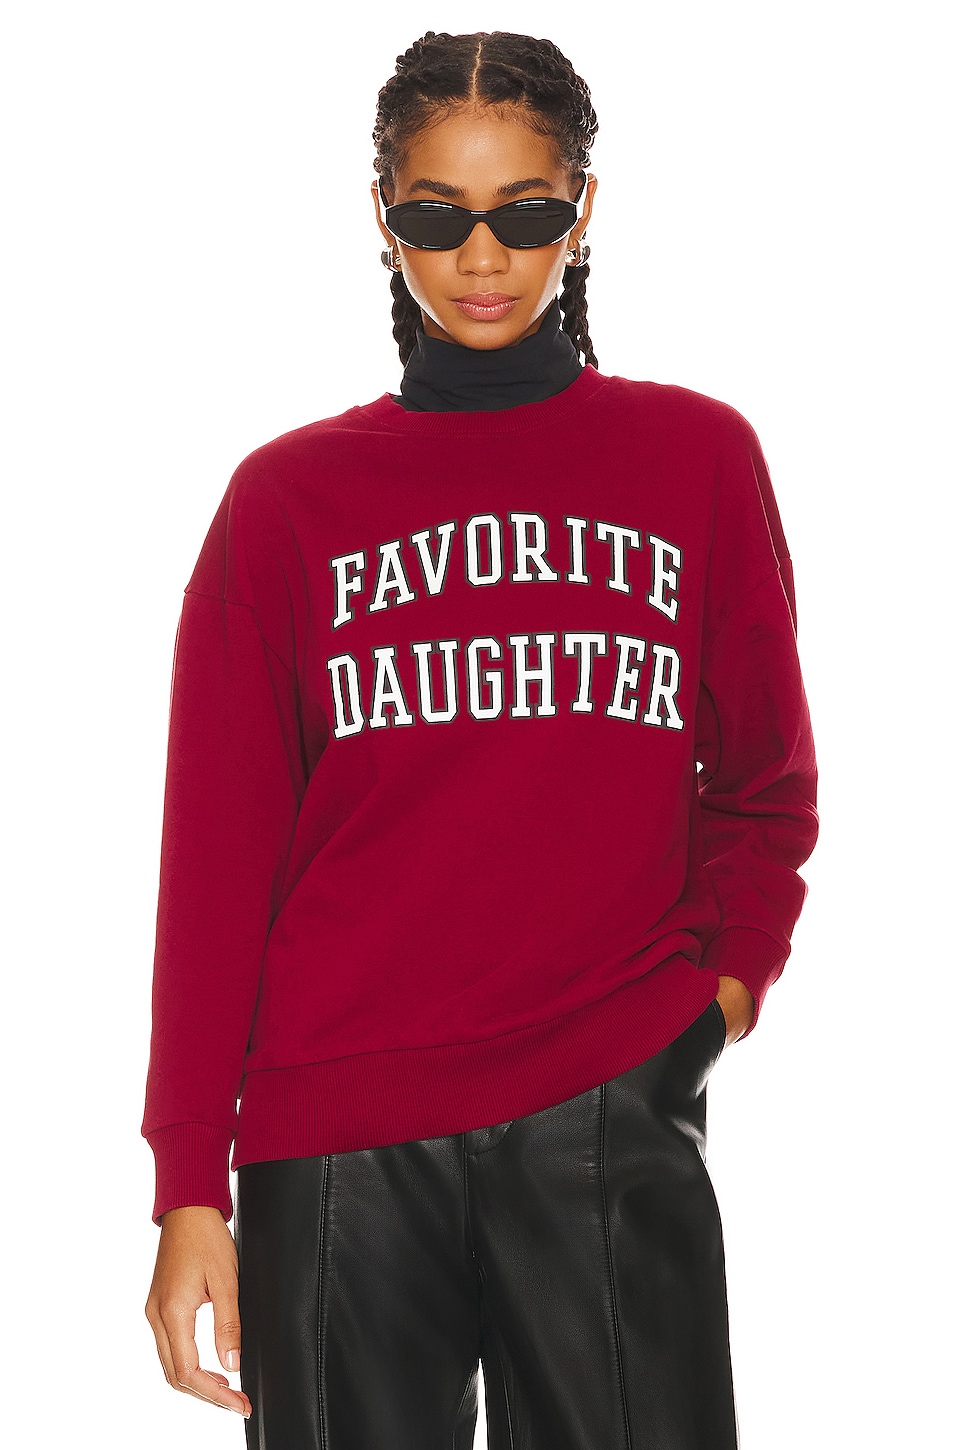 Favorite Daughter Collegiate Sweatshirt in Collegiate Red